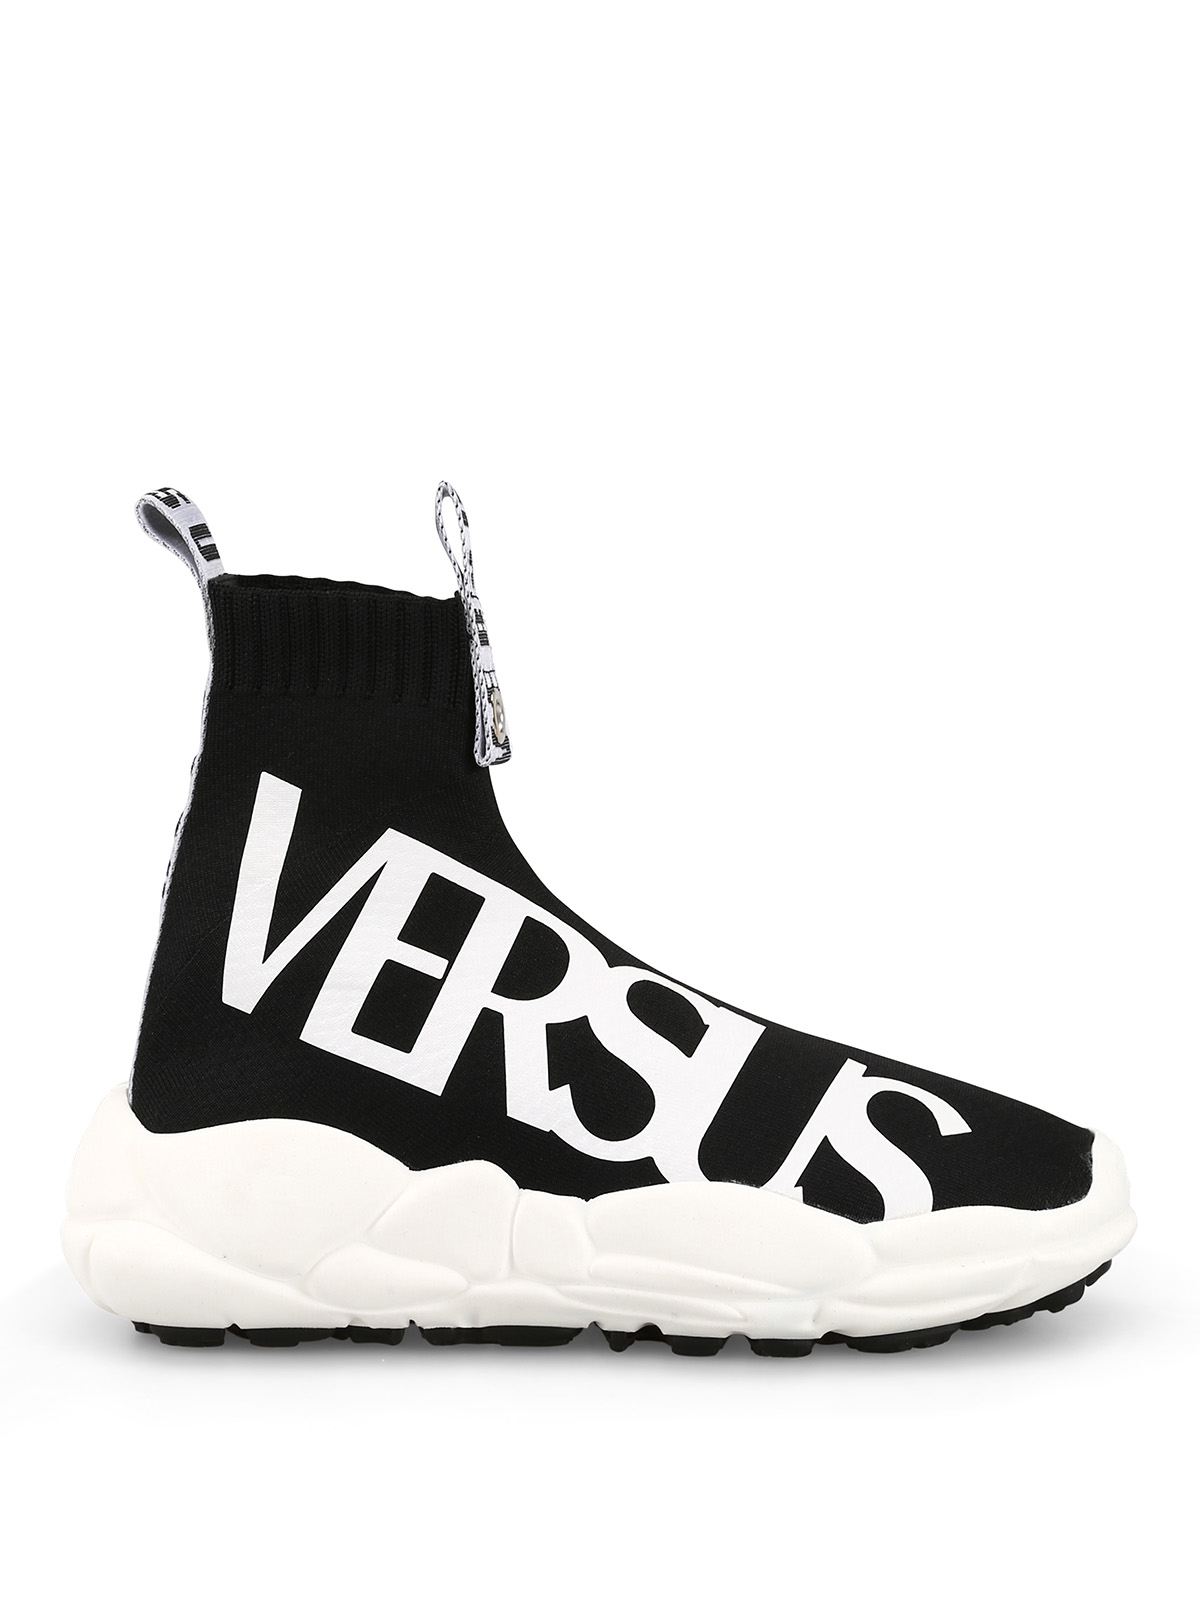 versus sneakers